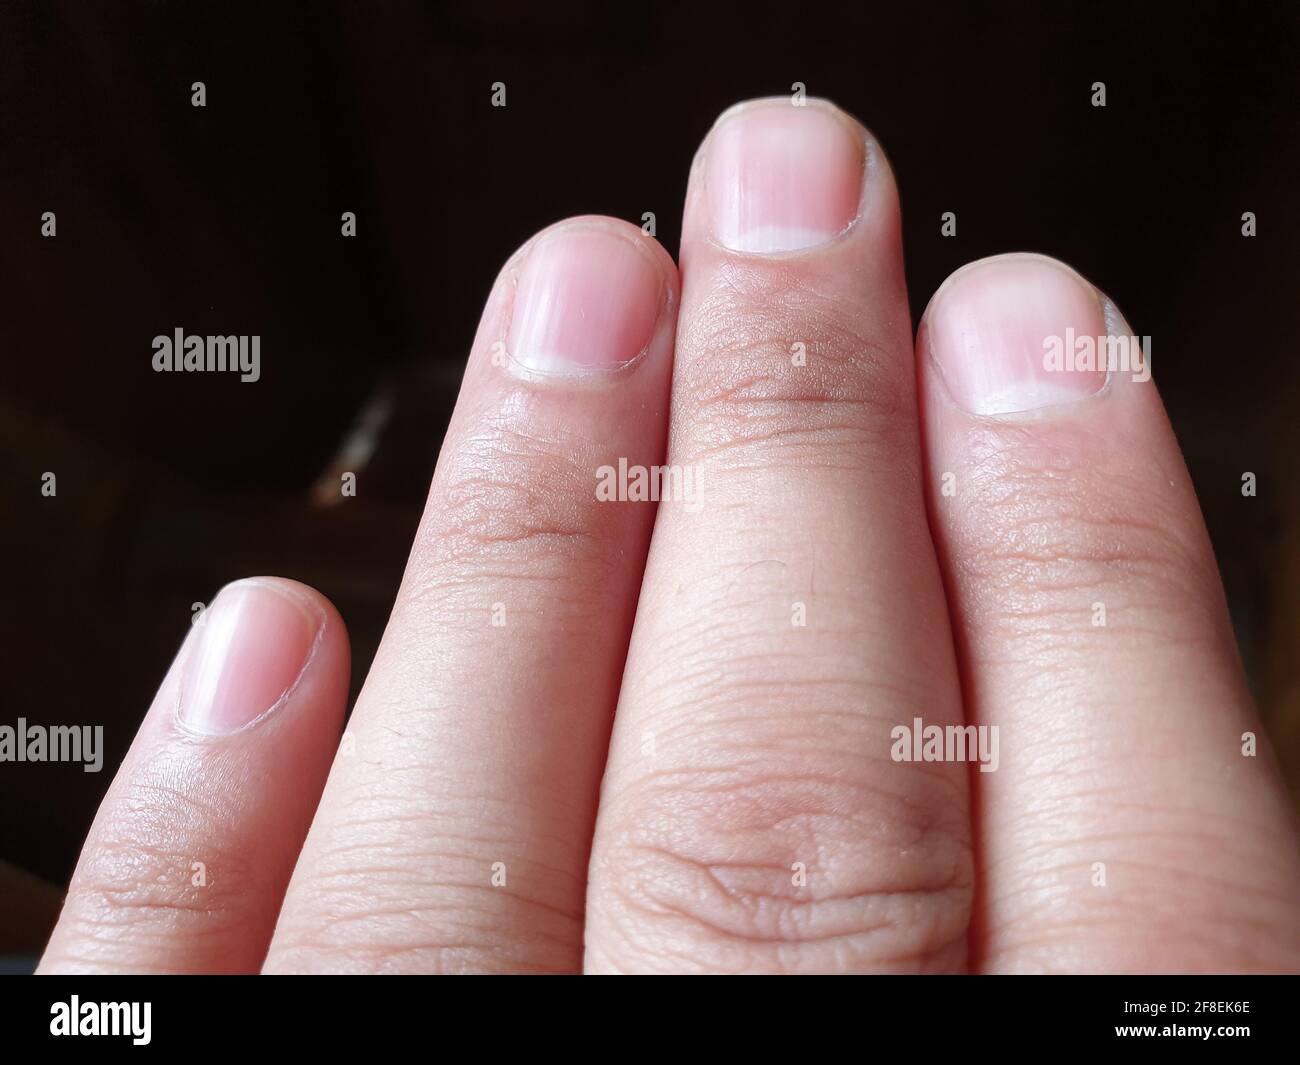 Quattro dita di una mano e unghie in modo elegante foto per quanto riguarda l'assistenza sanitaria Foto Stock